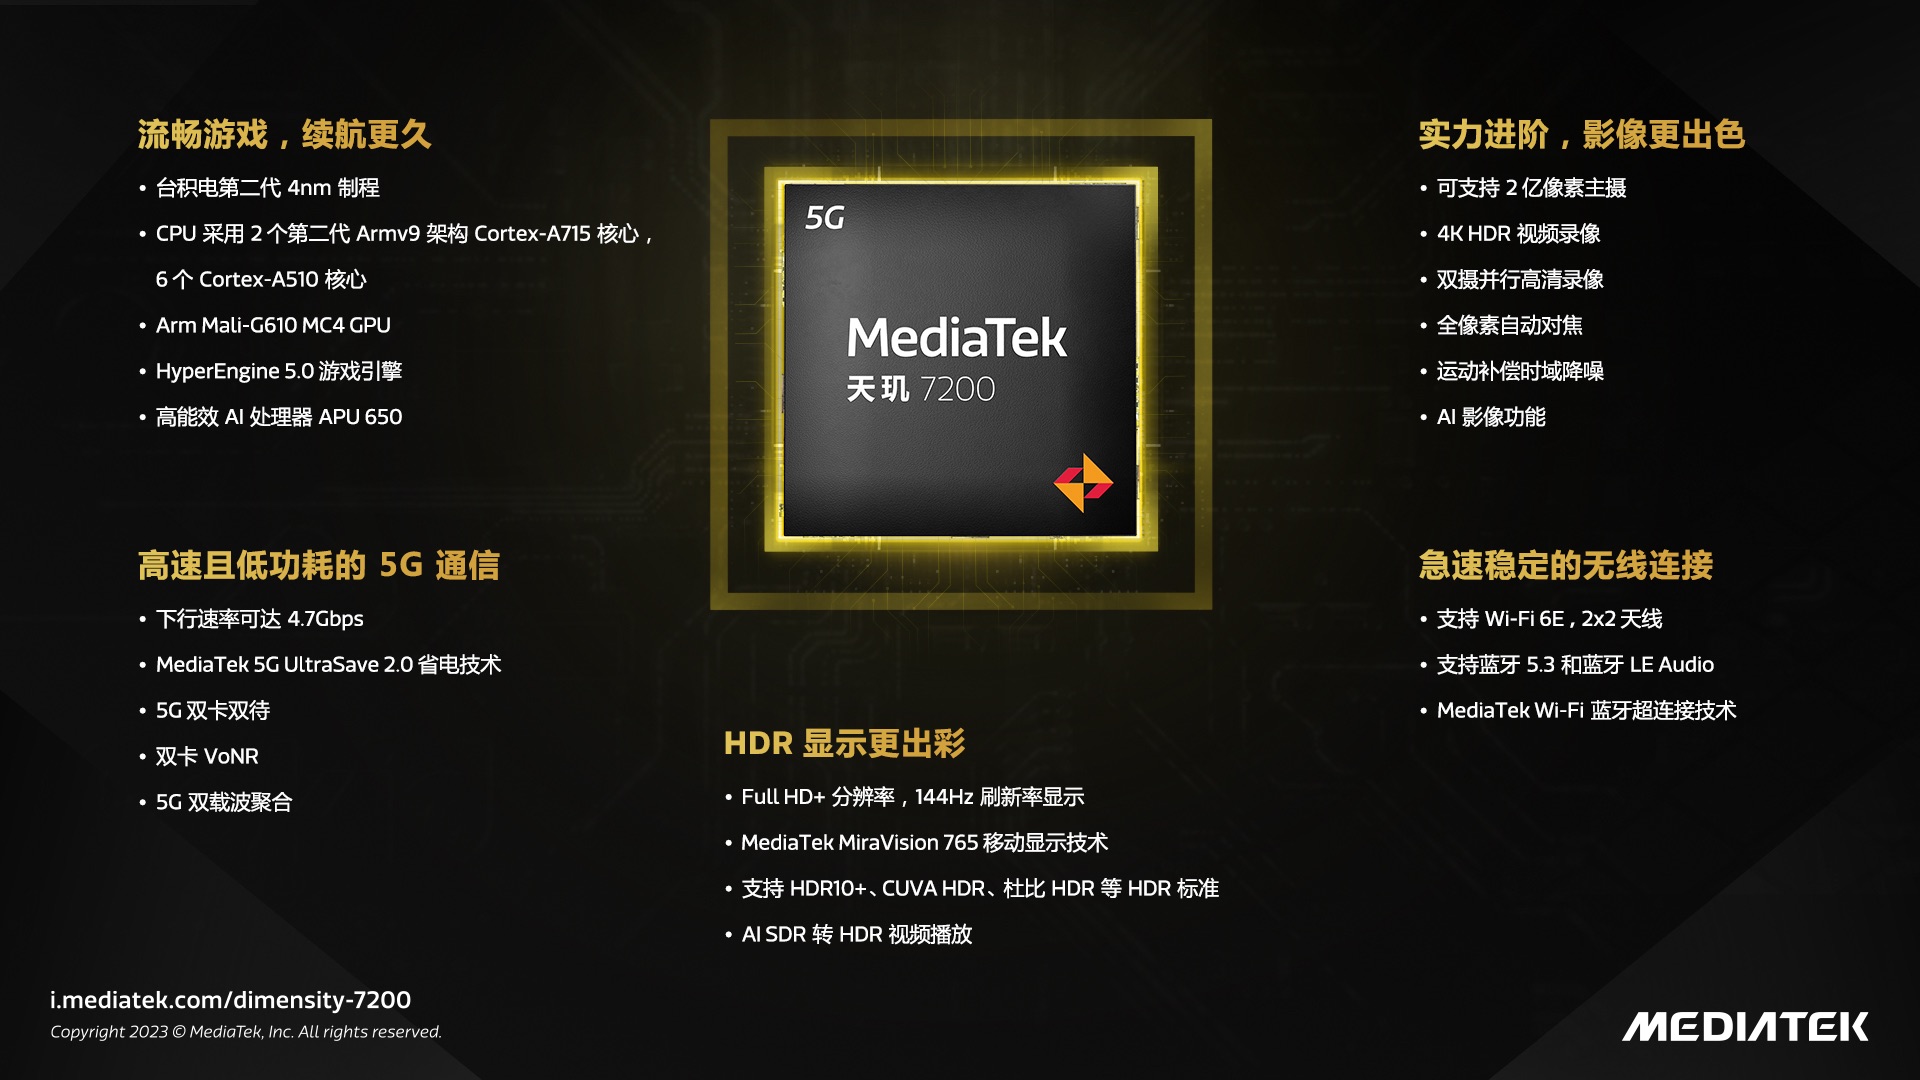 升级游戏与影像体验 MediaTek发布天玑 7200移动平台